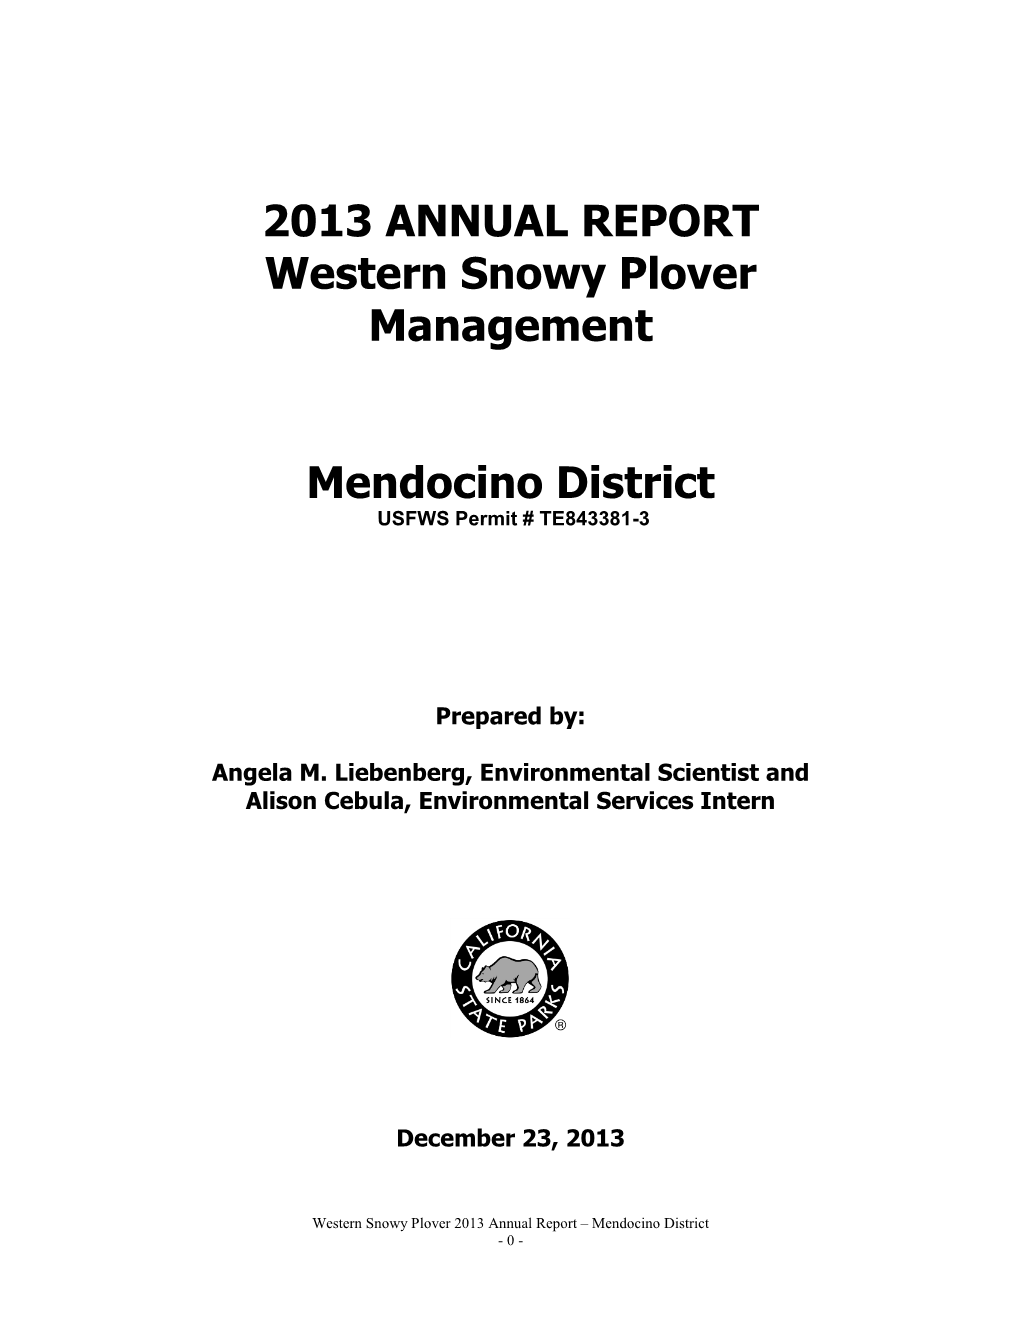 2013 CDPR Mendocino District Annual Report